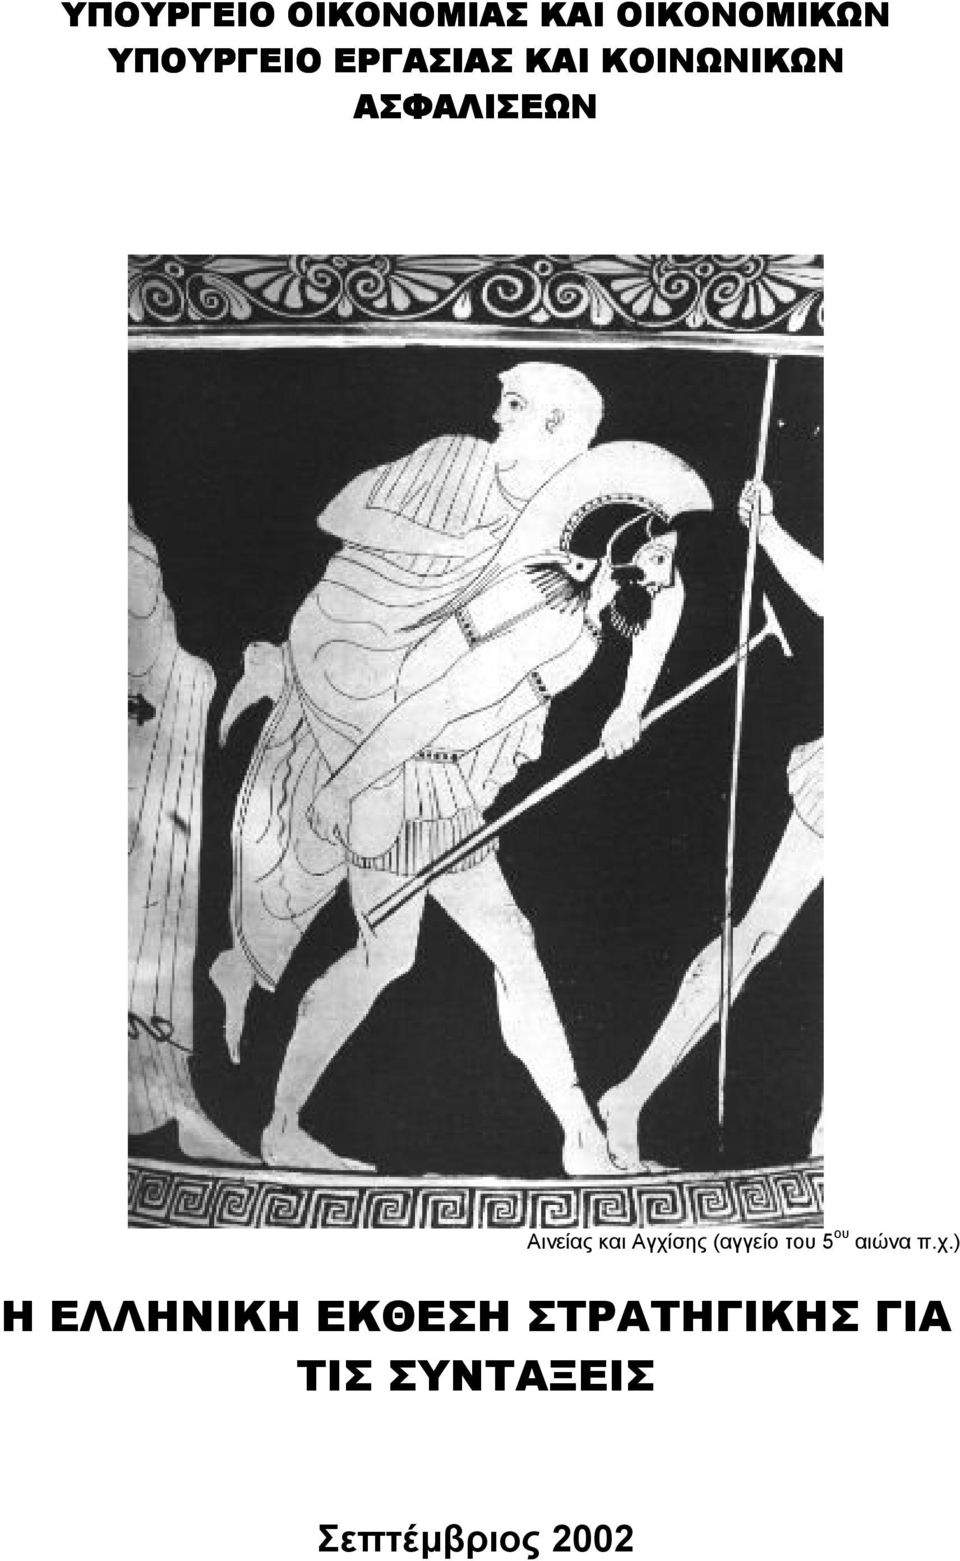 Αγχίσης (αγγείο του 5 ου αιώνα π.χ.) Η ΕΛΛΗΝΙΚΗ